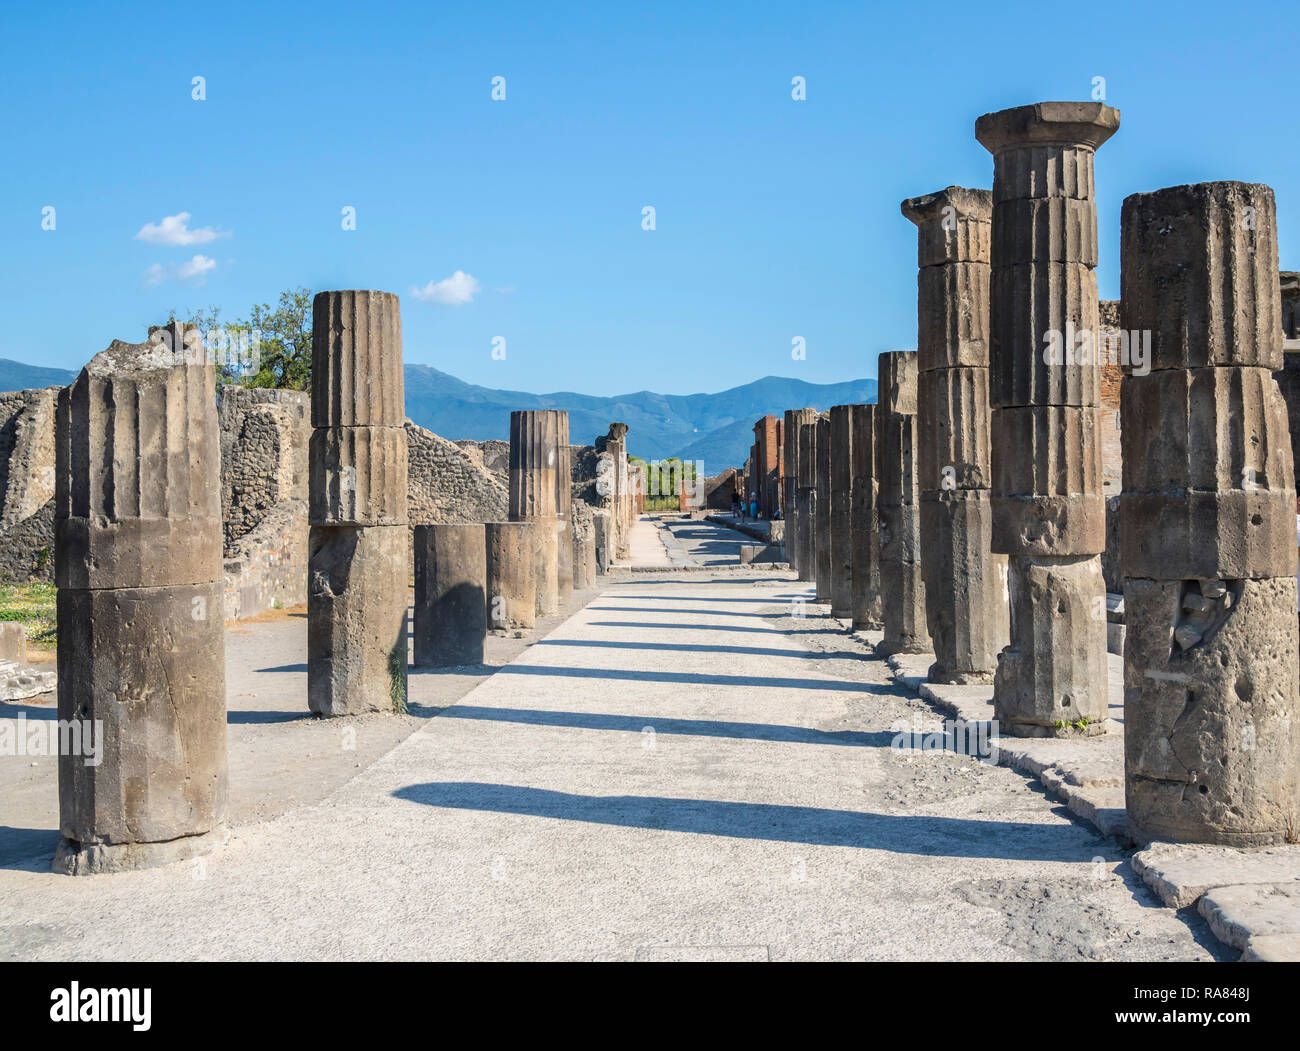 Rovine di Pompei, Italia attrazione turistica, eruzione del Vesuvio, sito UNESCO, storia, colonne, Main Street, vuoto, antica città romana concetto Foto Stock